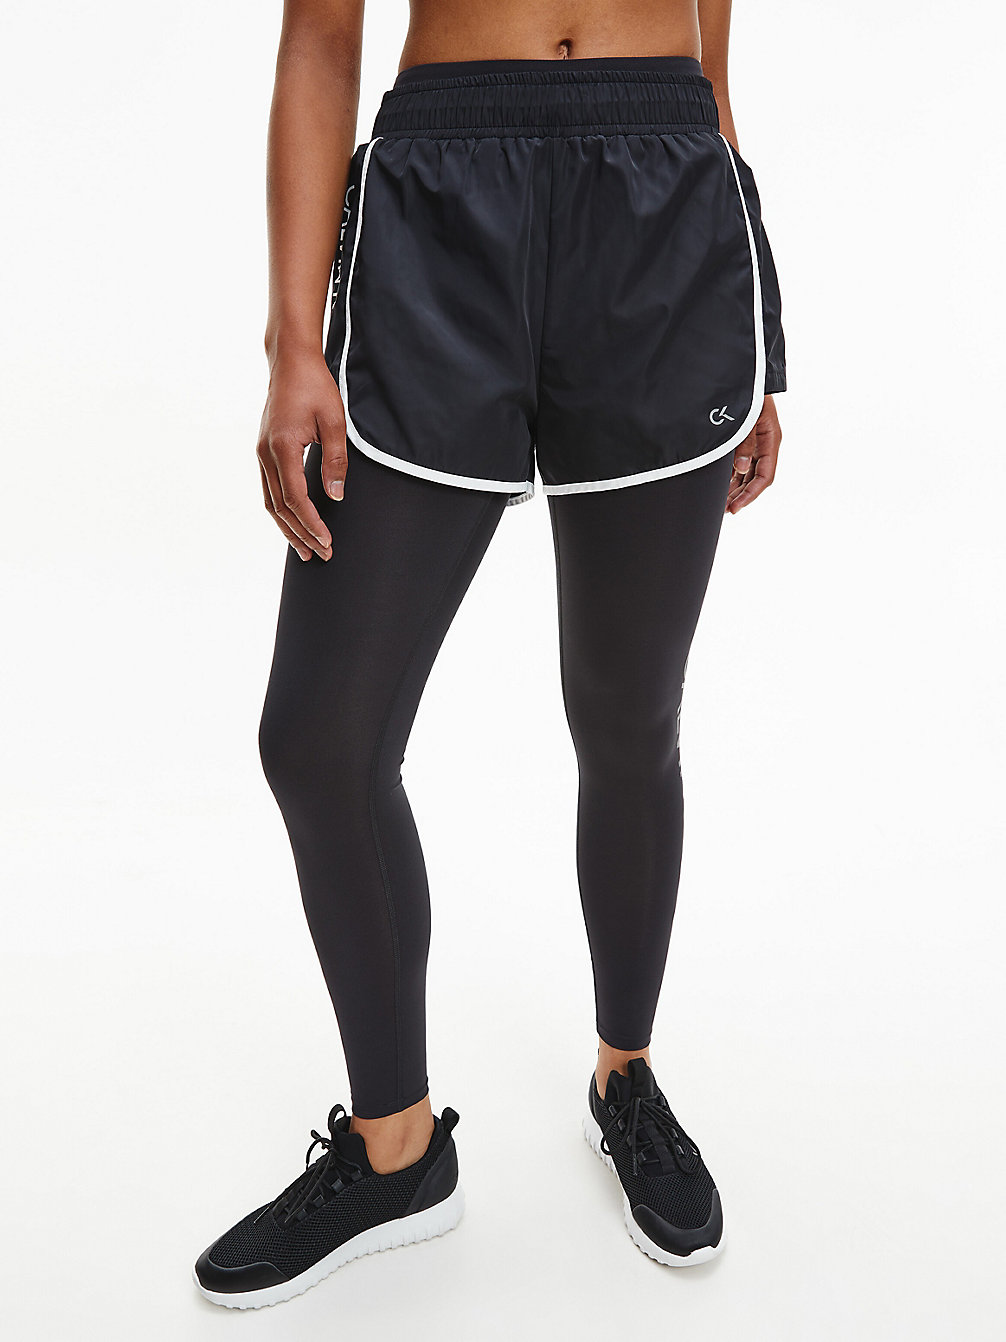 CK BLACK/BRIGHT WHITE Kurze Sporthose undefined Damen Calvin Klein